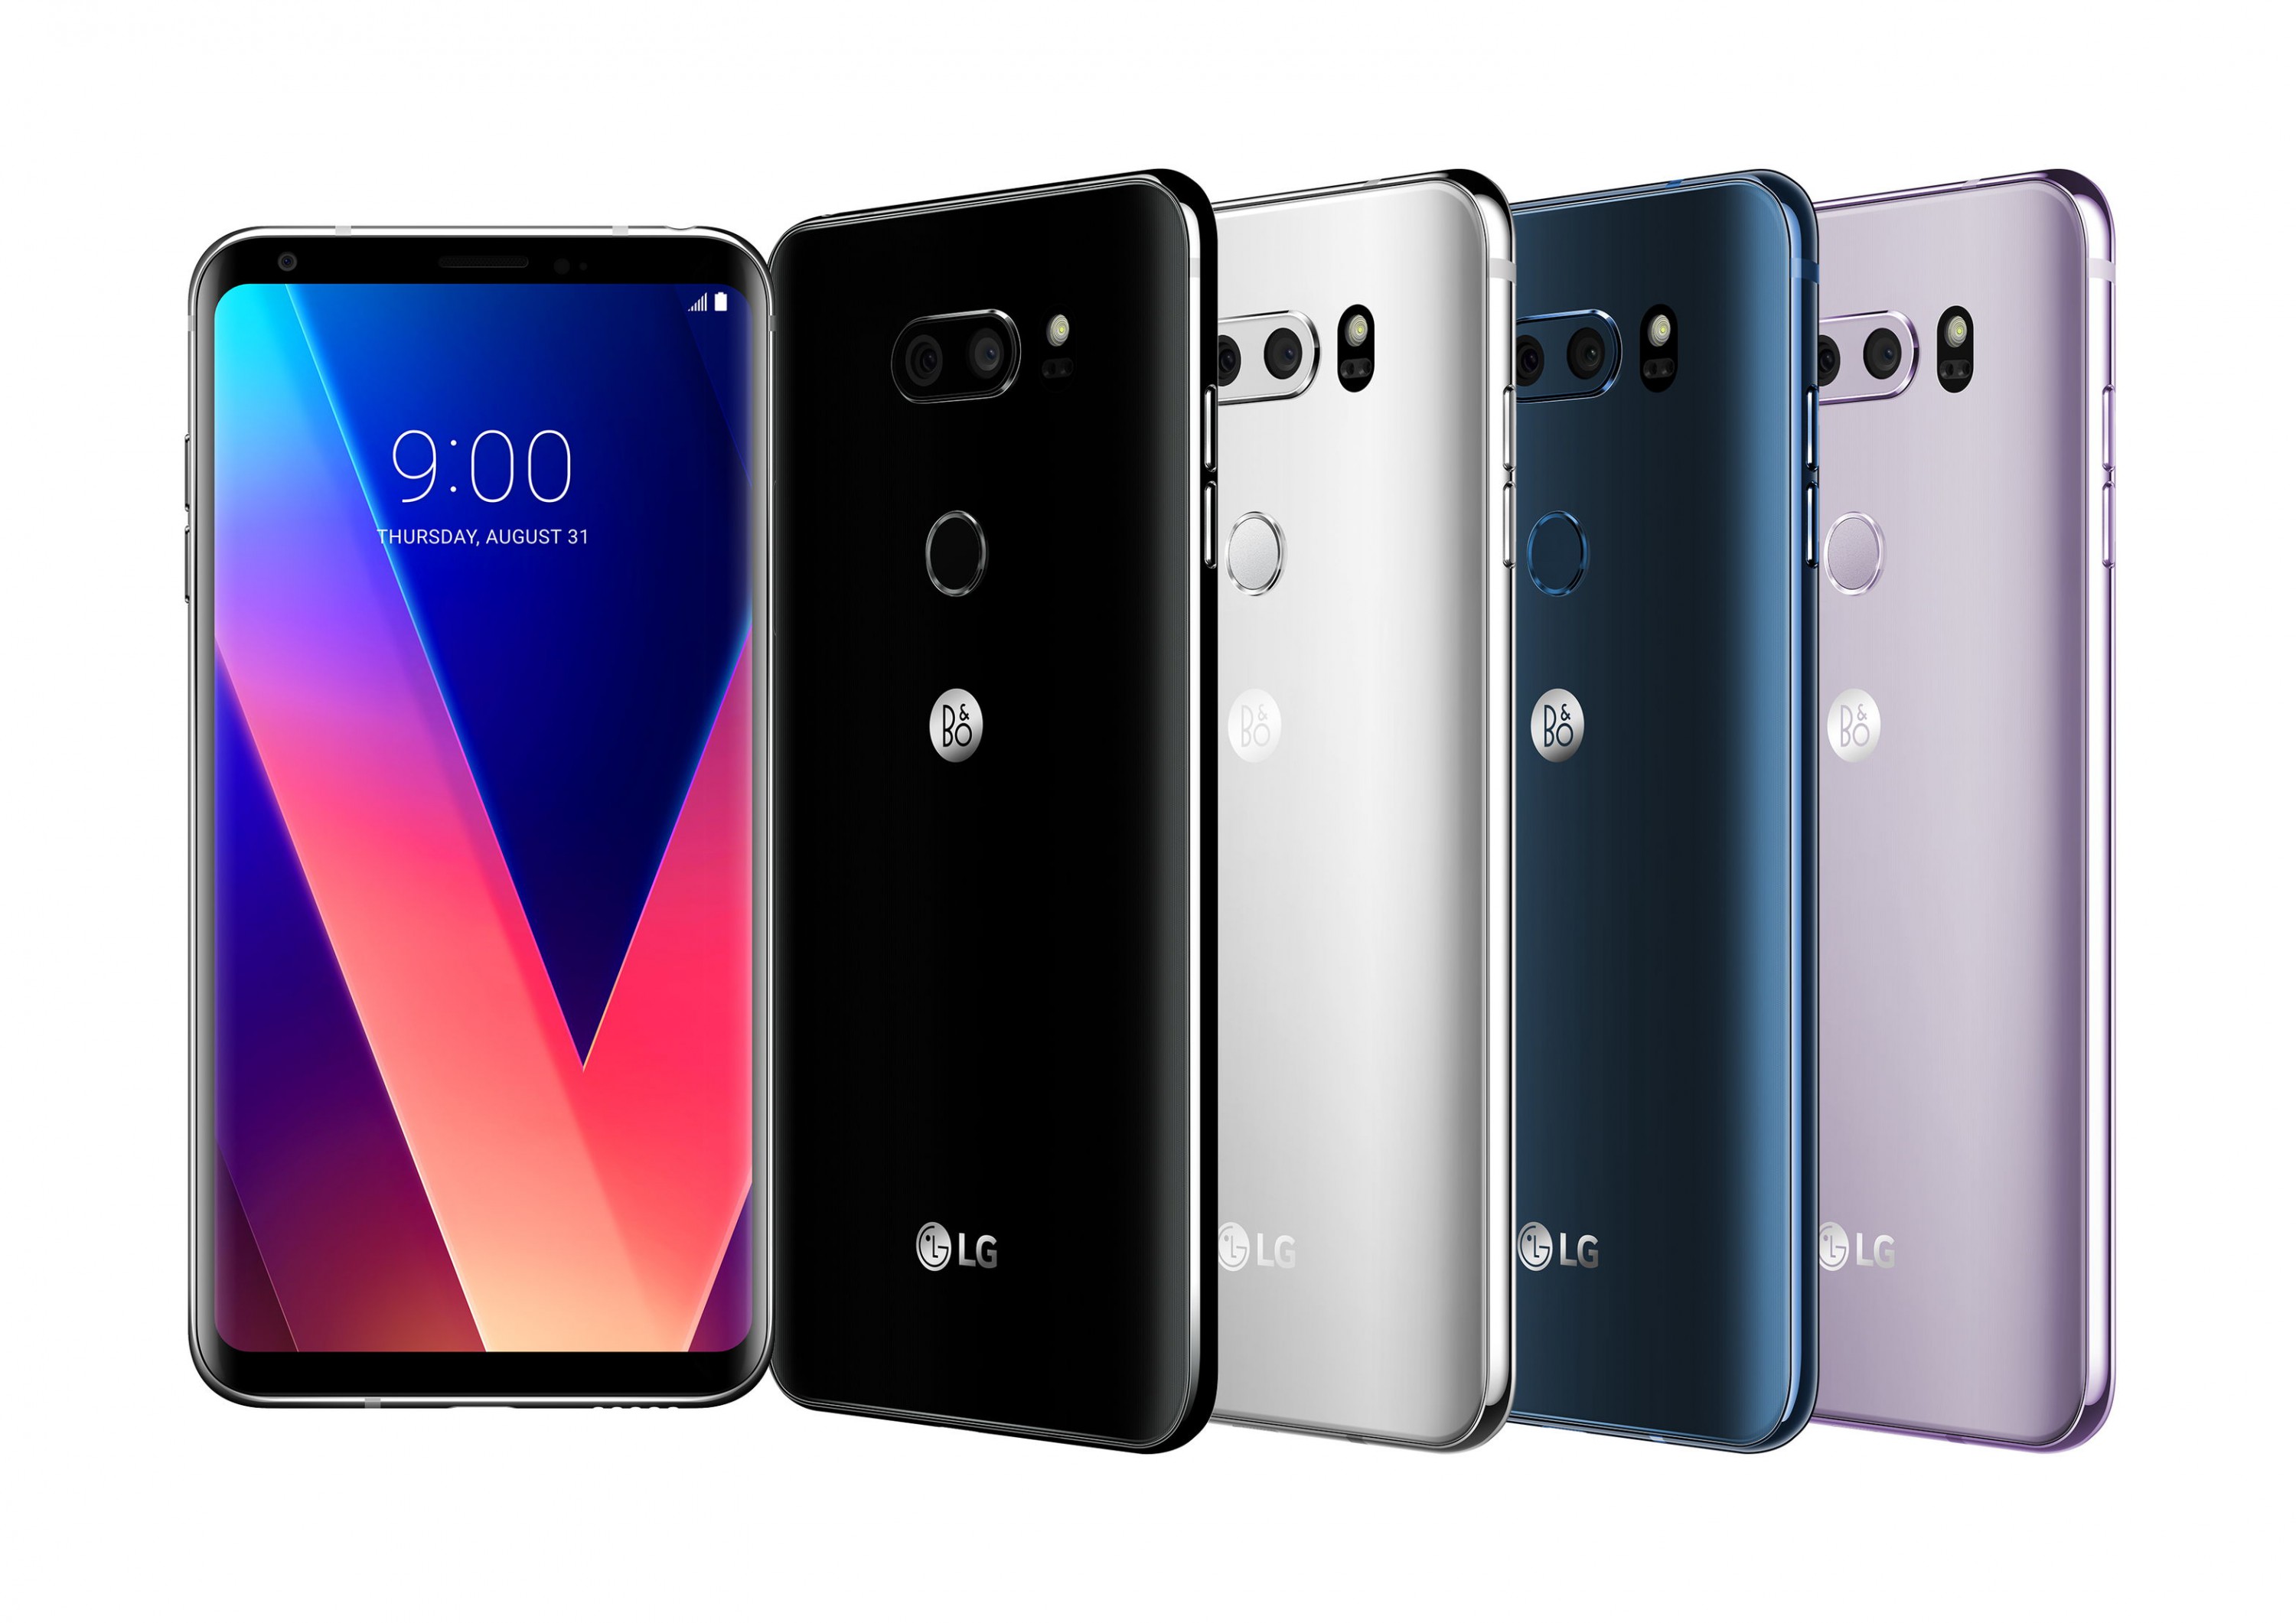 В Украине стартовали официальные продажи смартфона LG V30+ по цене 24 999 грн